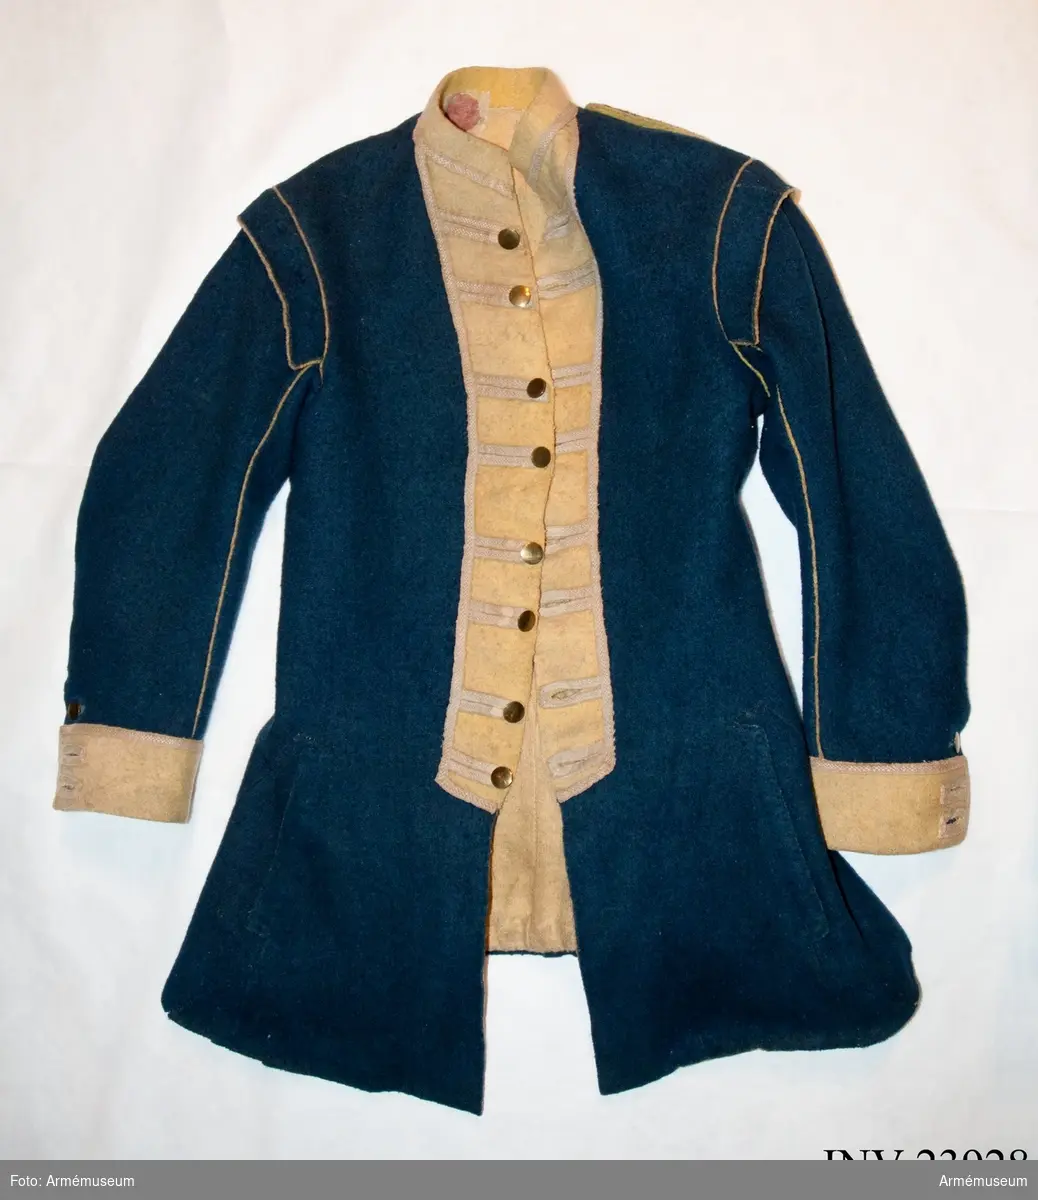 Jacka av blått kläde med gula bröstrevärer, krage och ärmuppslag, fodrad med gul boj samt linne i ärmarna. Försedd med mässingsknappar och vävda band som dekoration.